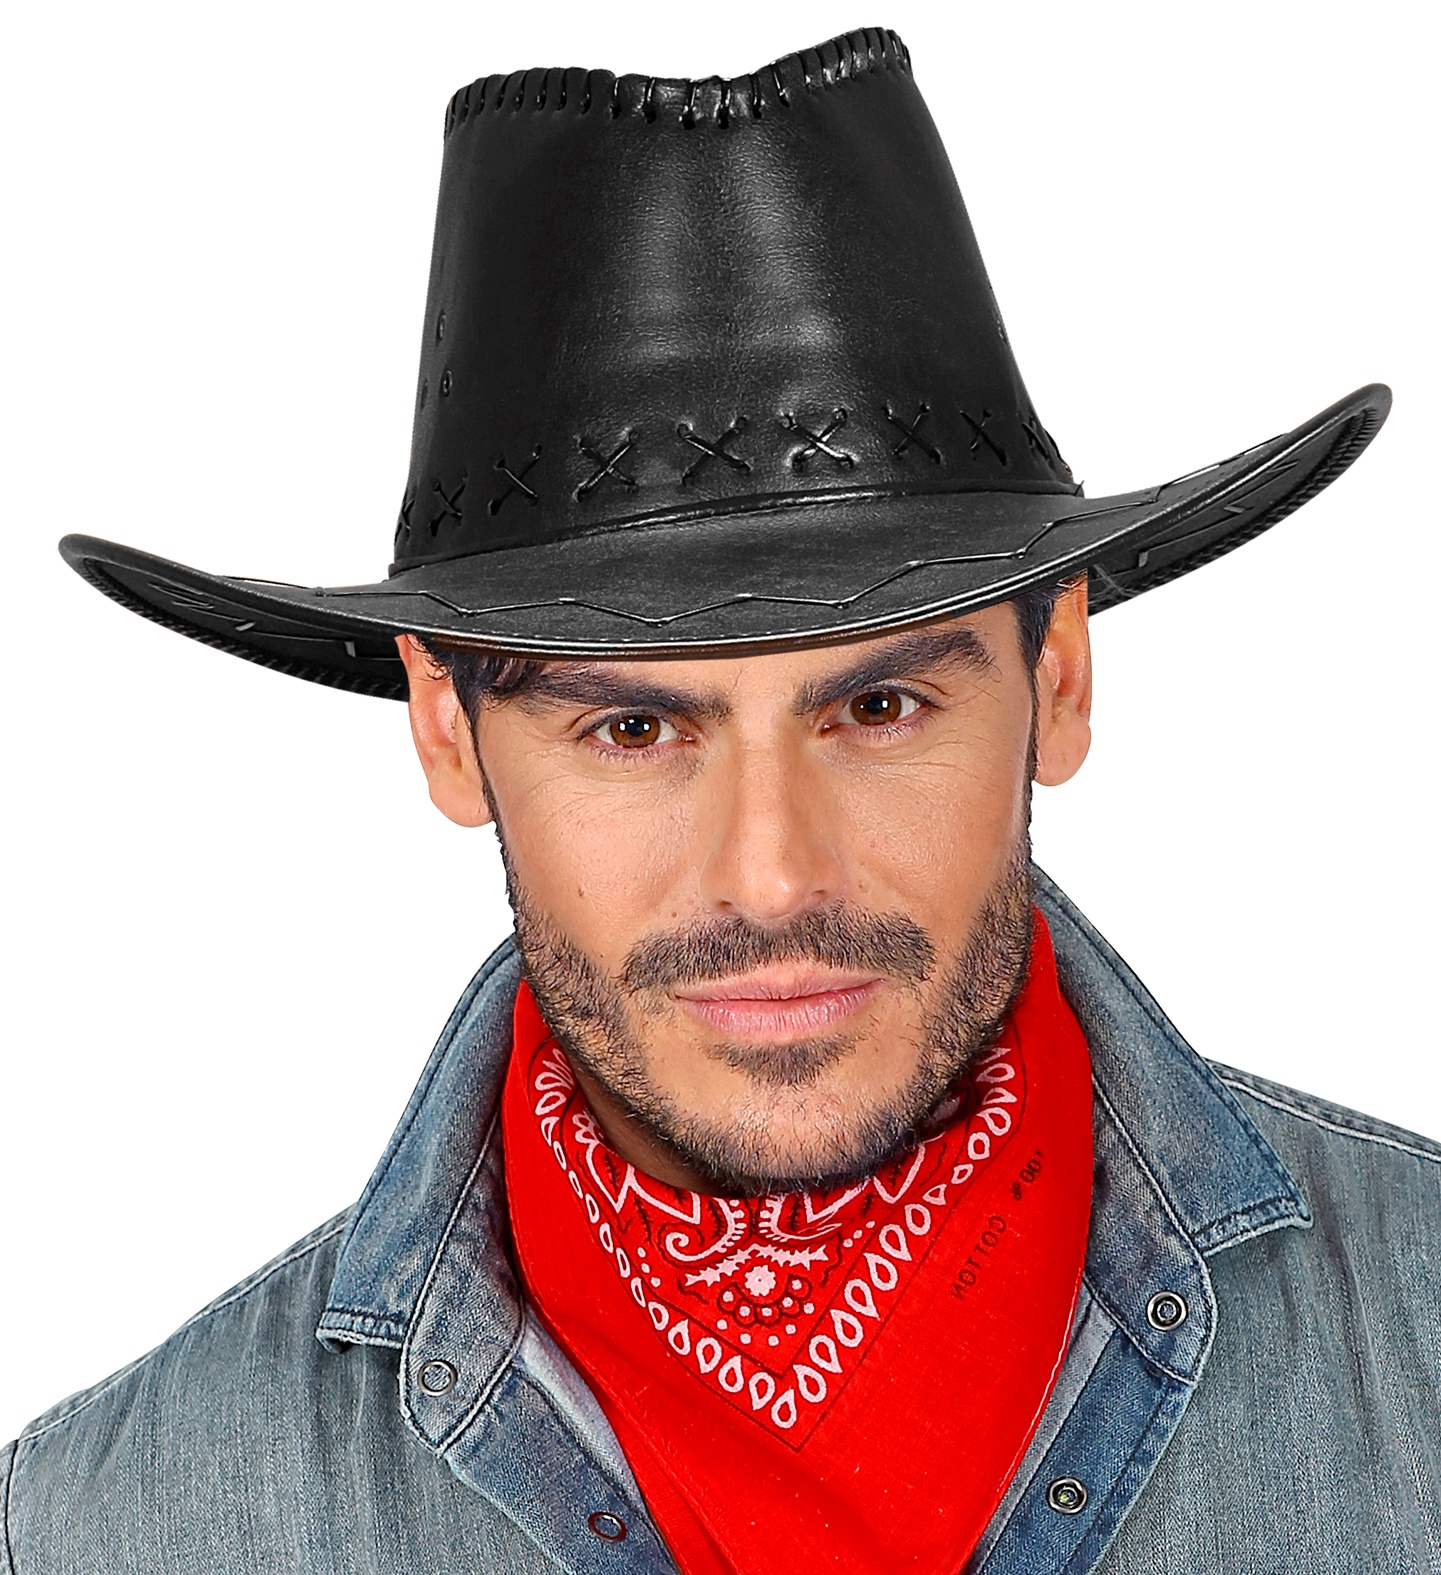 Sombrero Cowboy Simil Cuero, – Miscellaneous by Caff